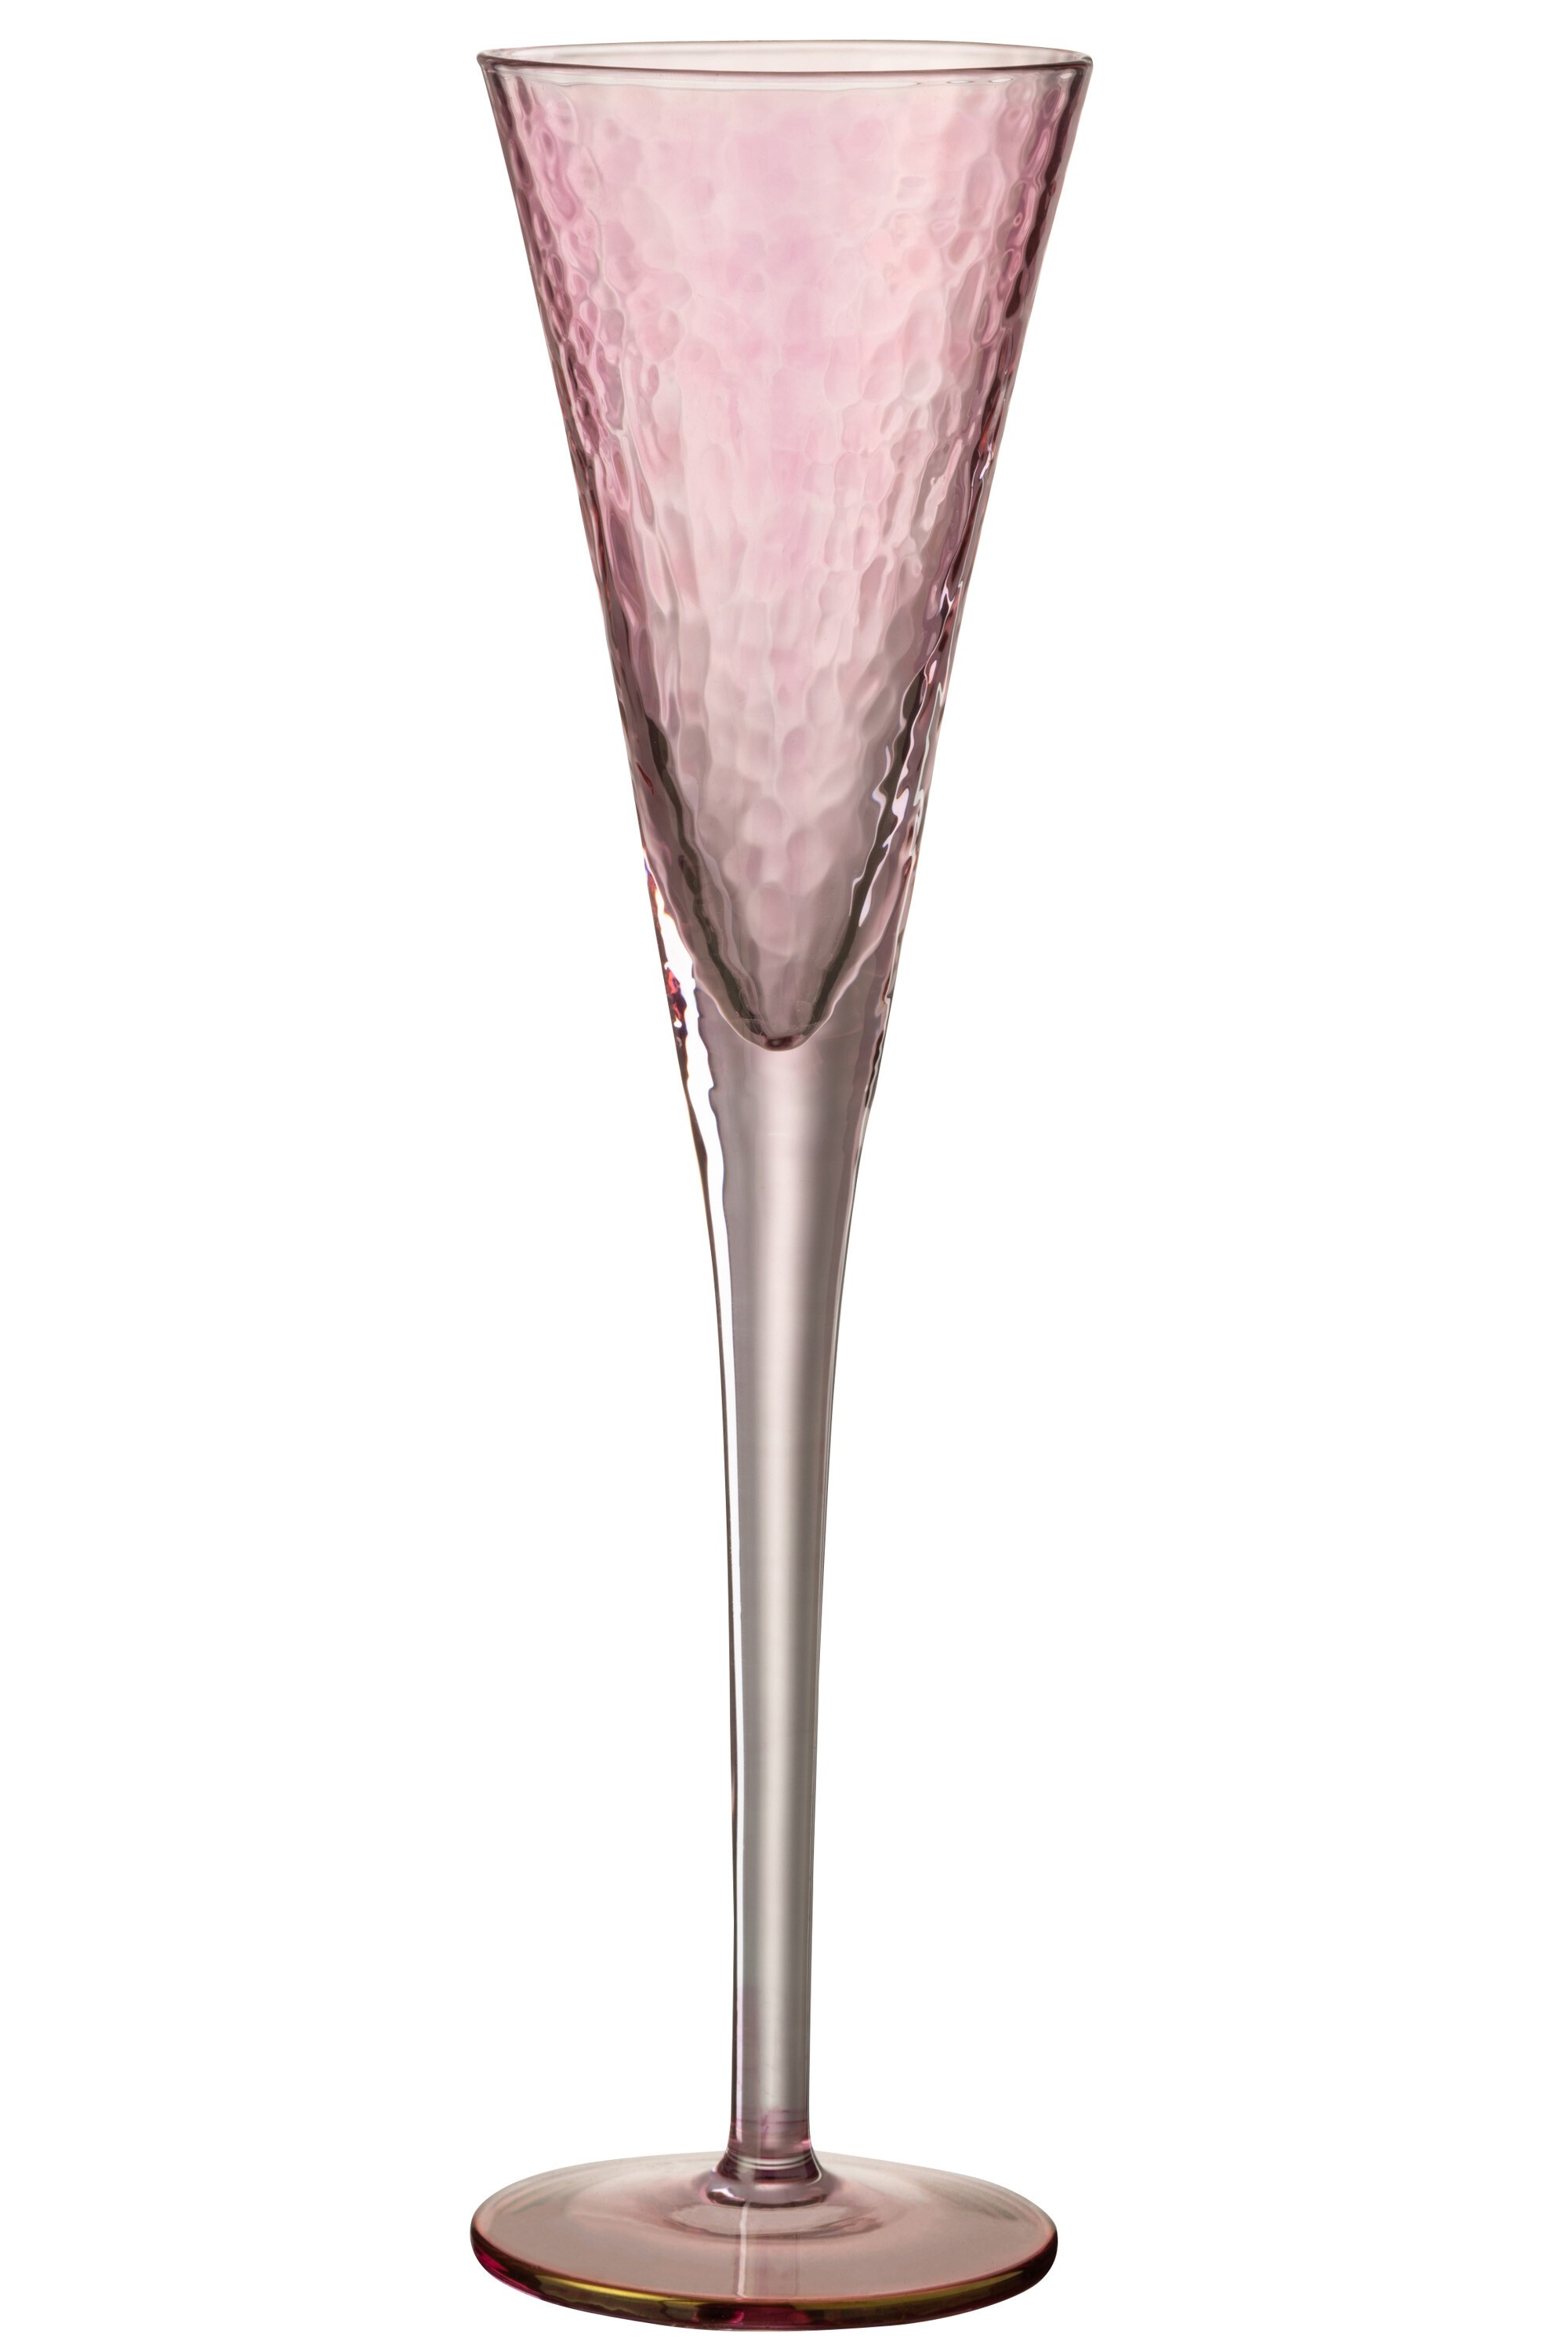 Růžová sklenička na šampaňské Oil transparent - Ø 7*28 cm 7765